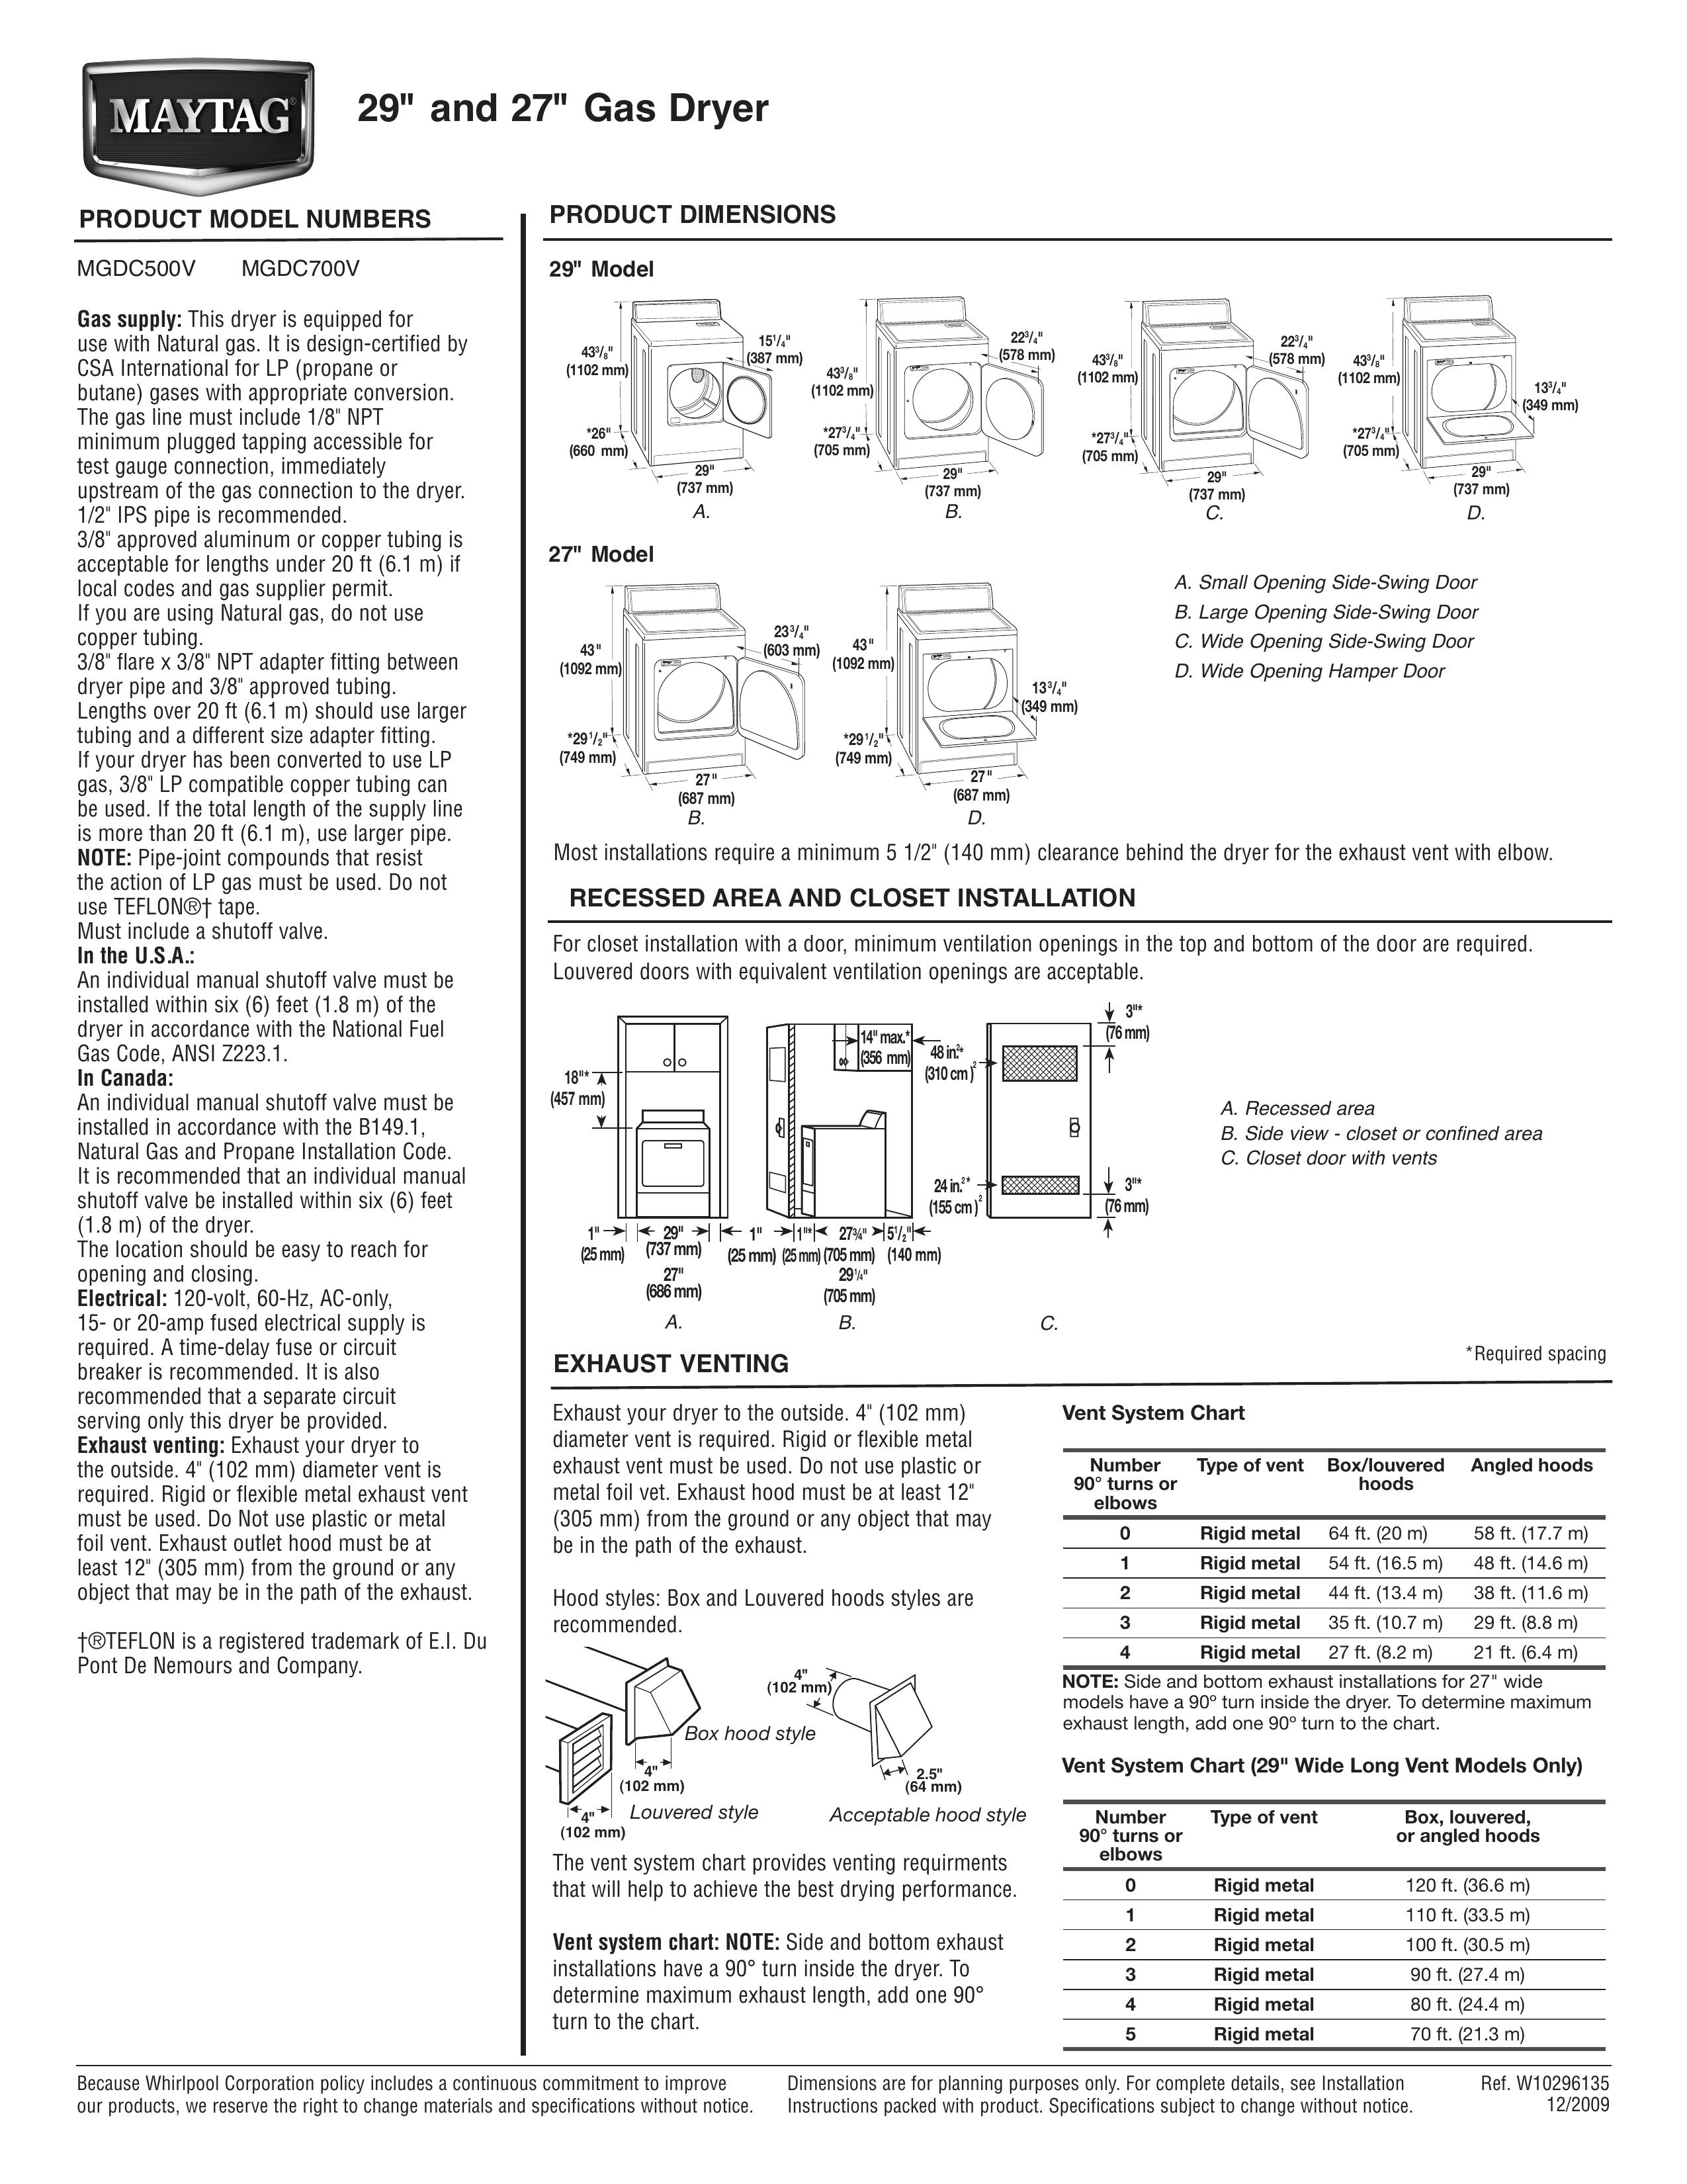 Maytag MGDC500V Ventilation Hood User Manual